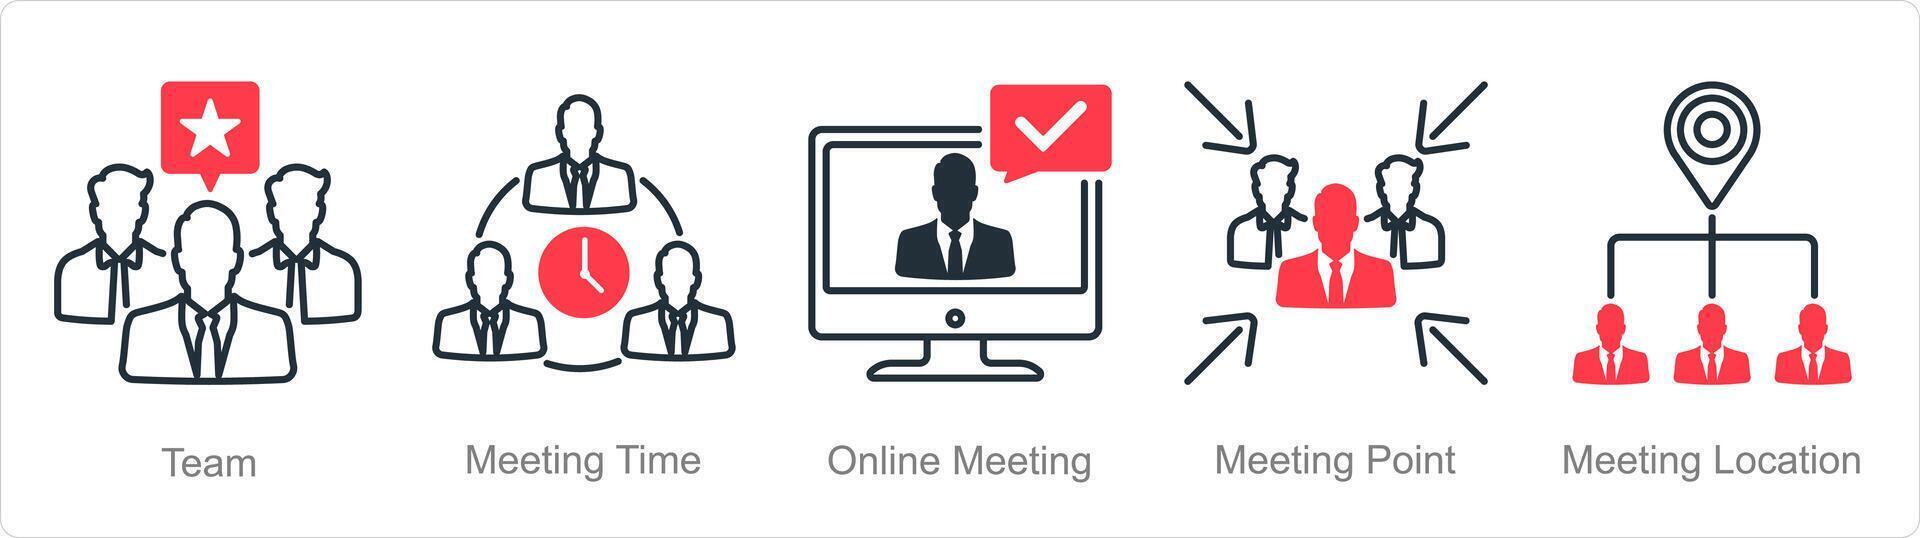 en uppsättning av 5 möte ikoner som team, möte tid, uppkopplad möte vektor